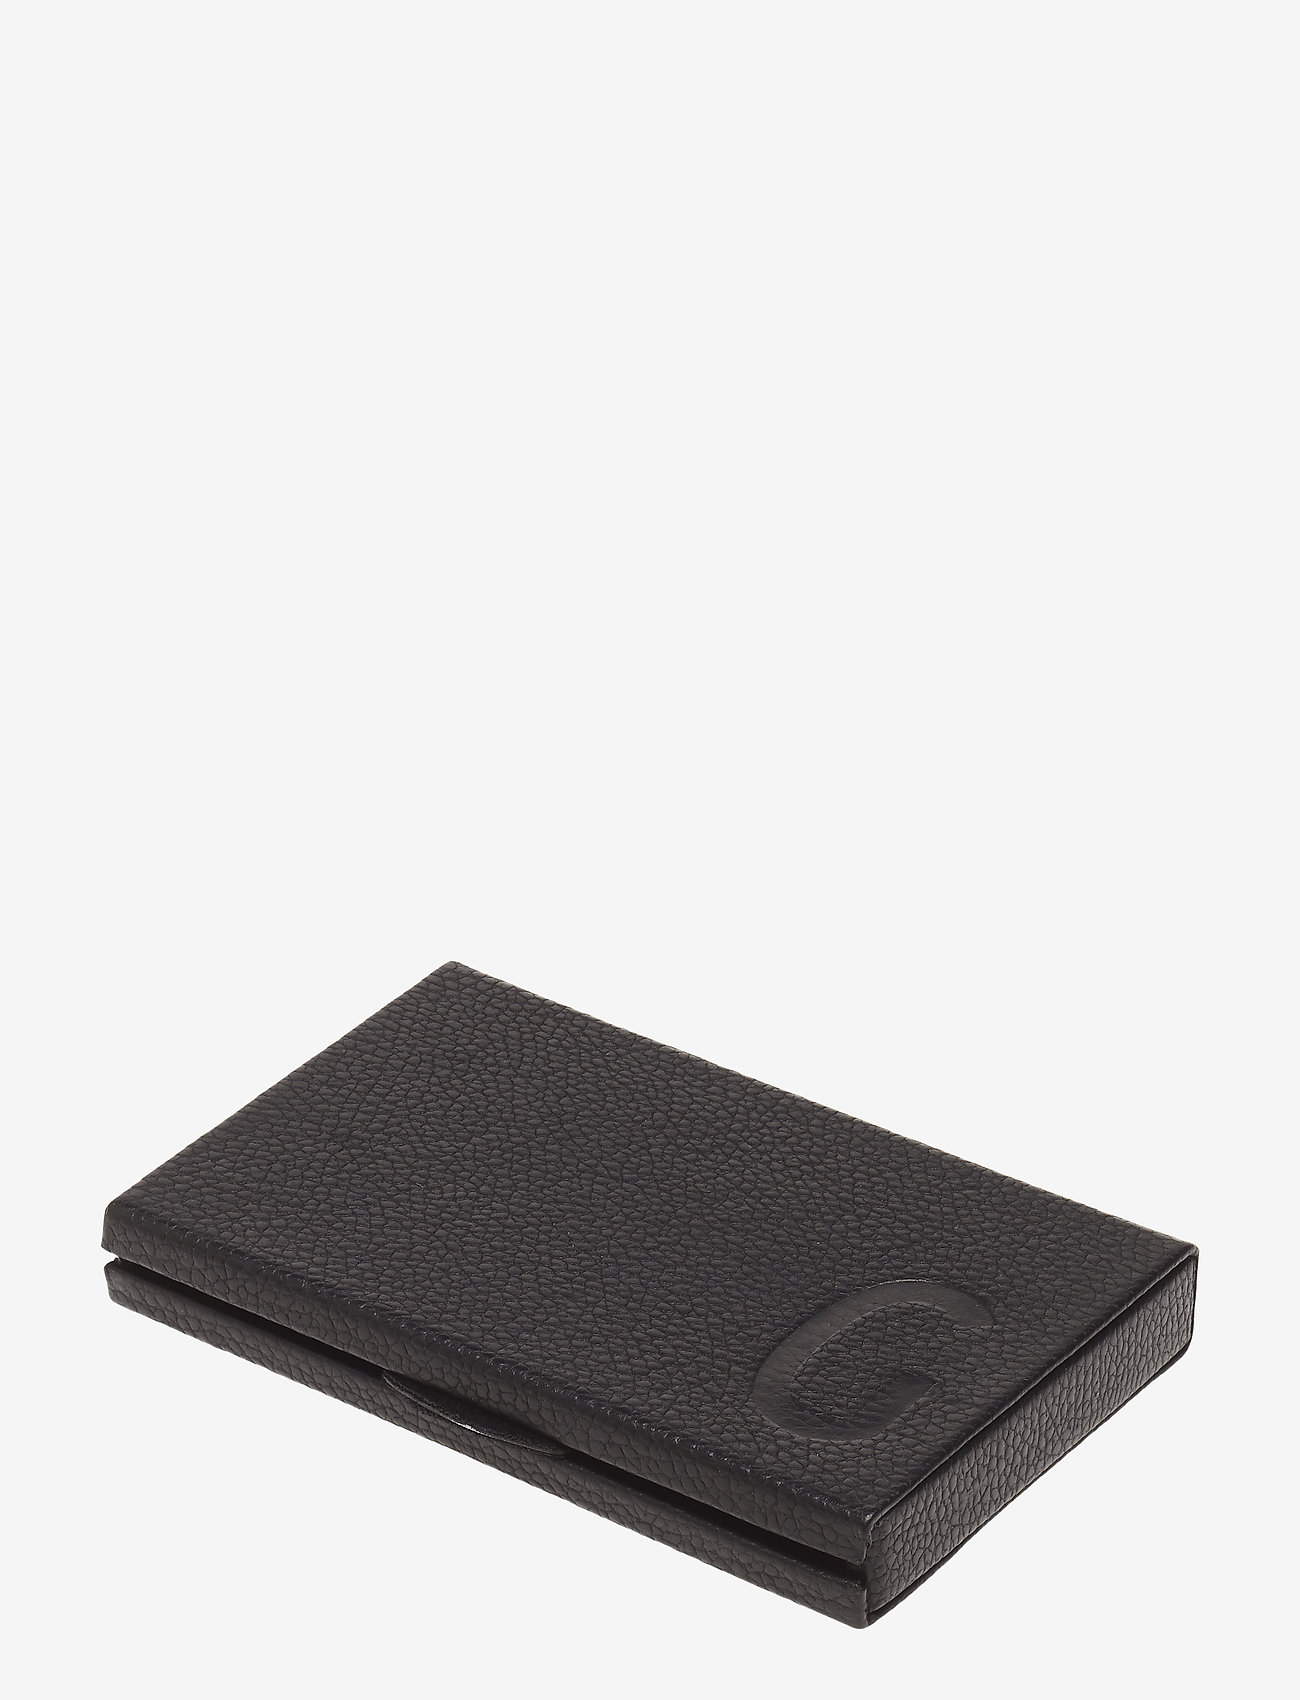 Design Letters - Personal Card holder - portemonnees - black - 0